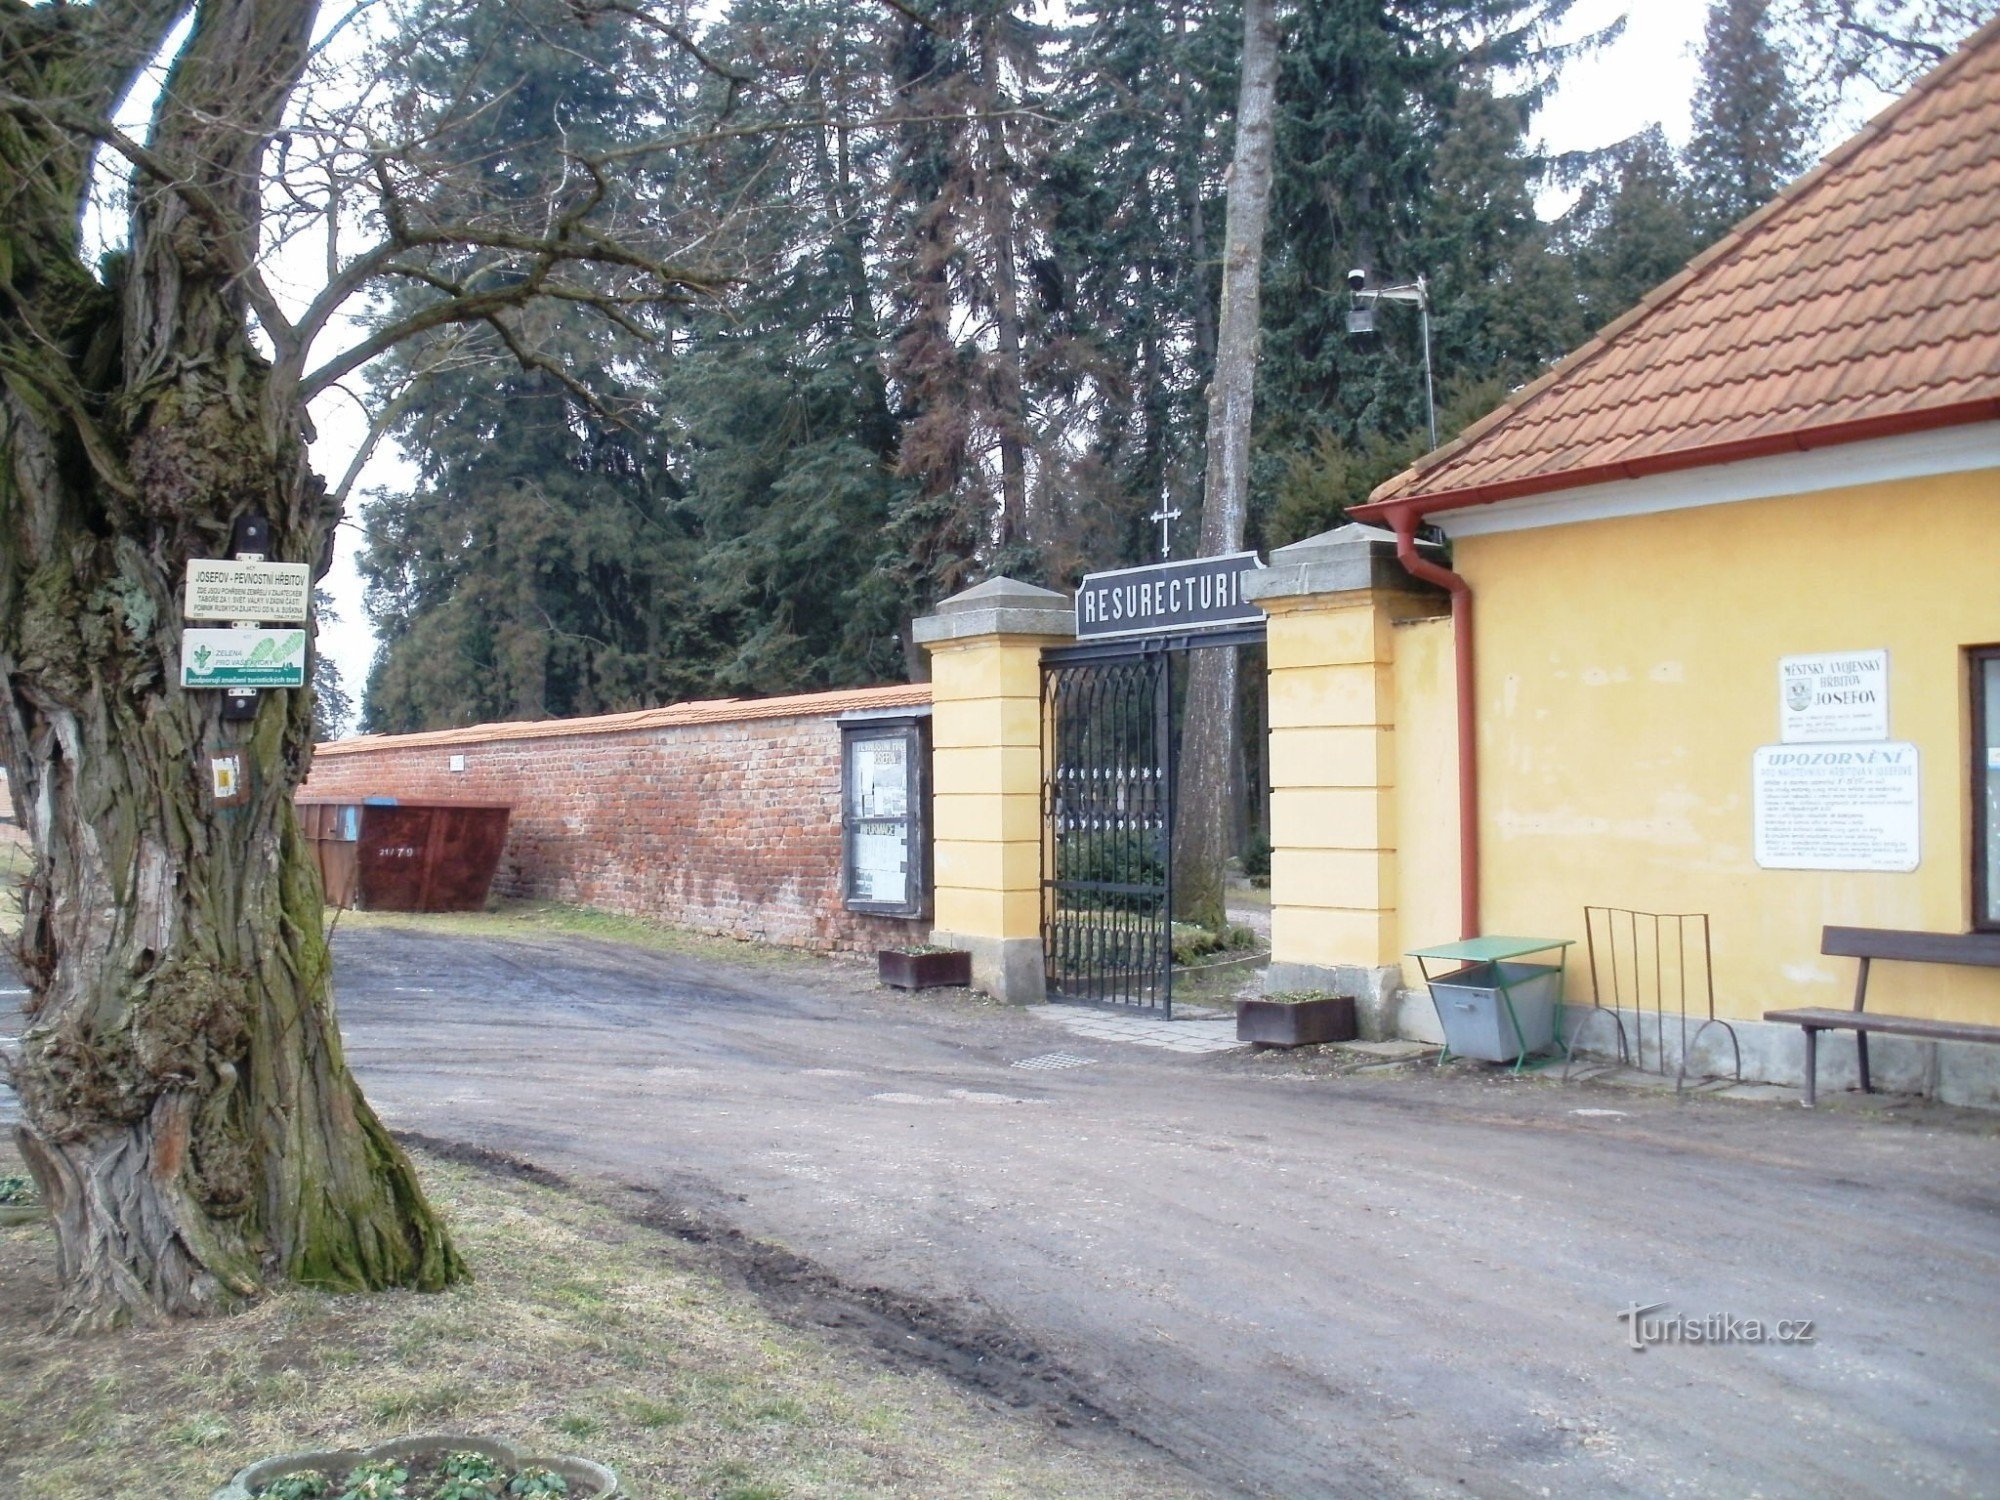 turistkorsning Josefov - fästningskyrkogård